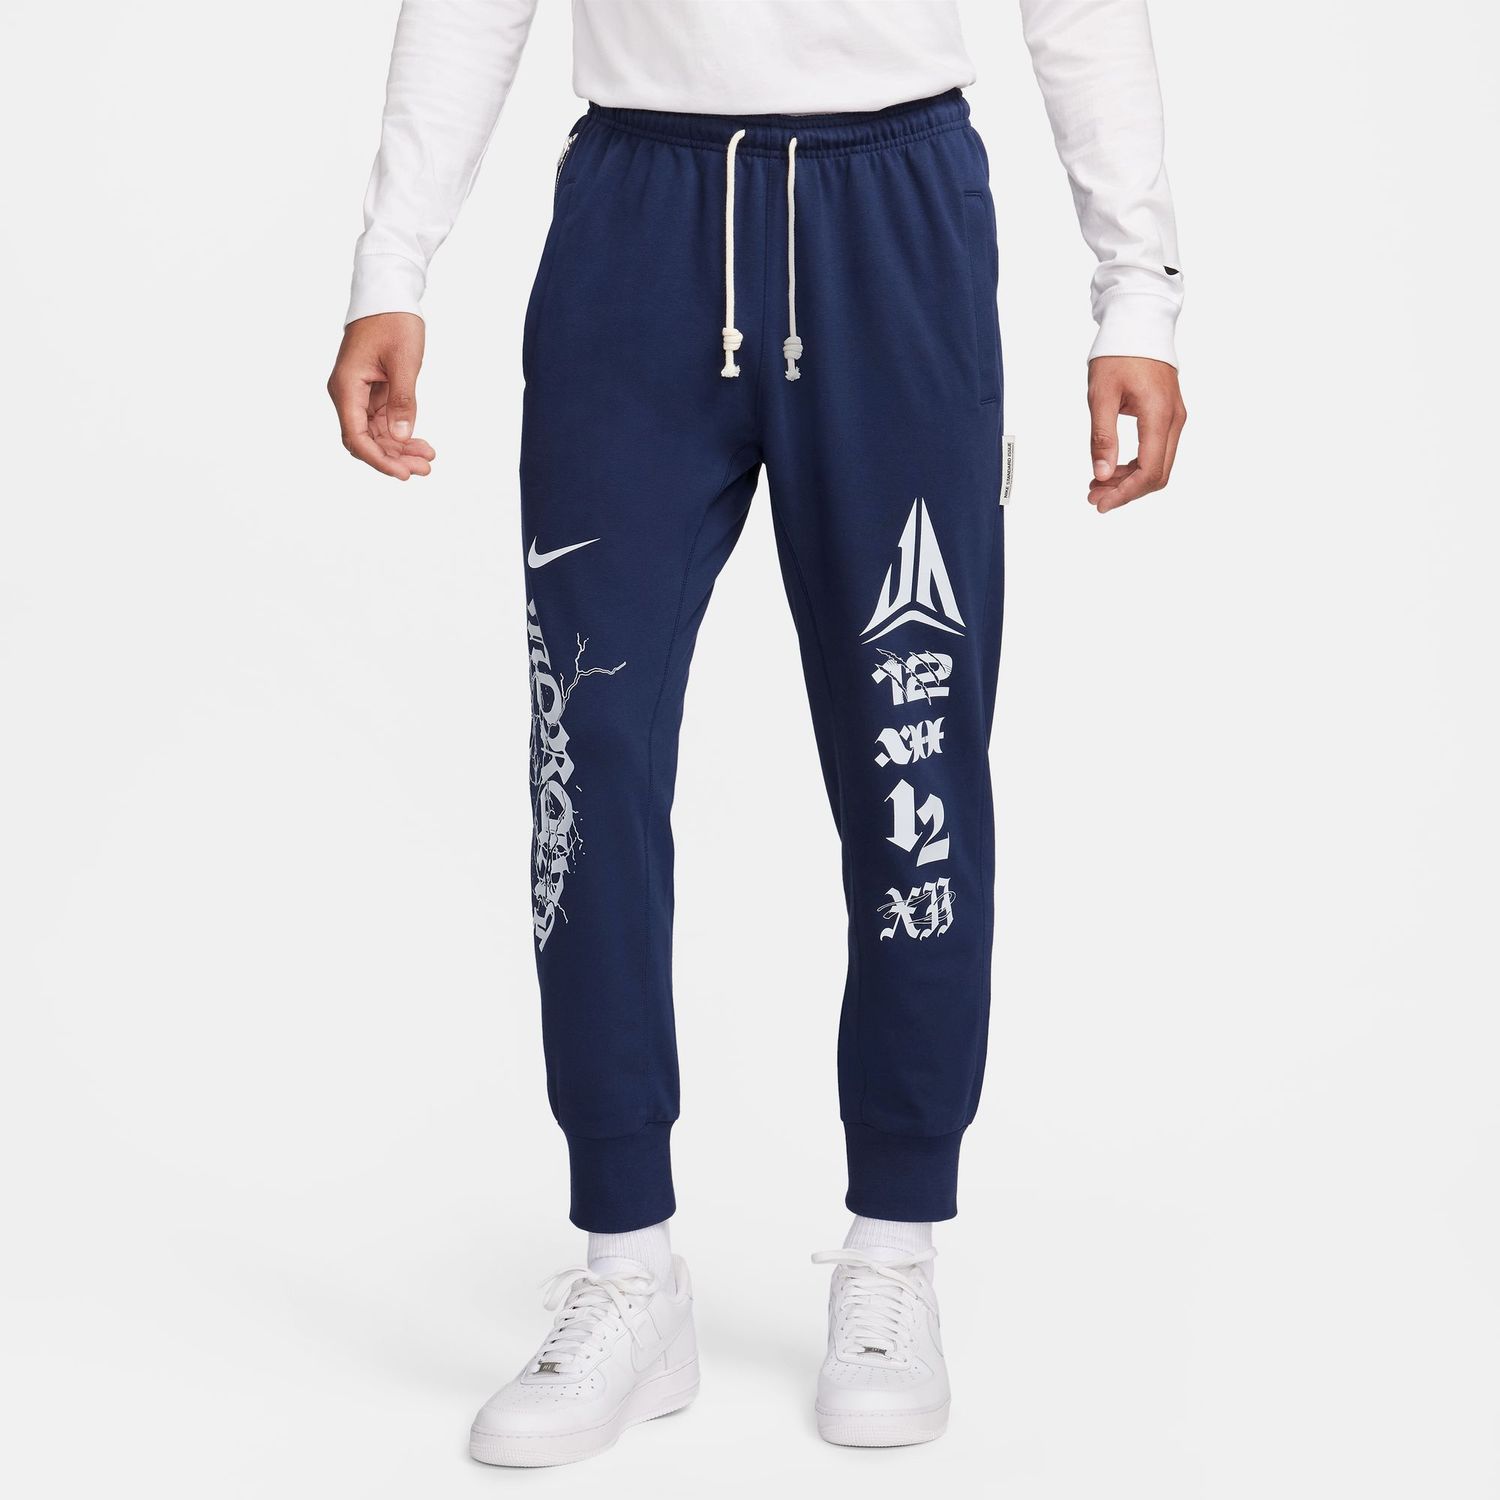 Nike Ja Morant Standard Issue Pants